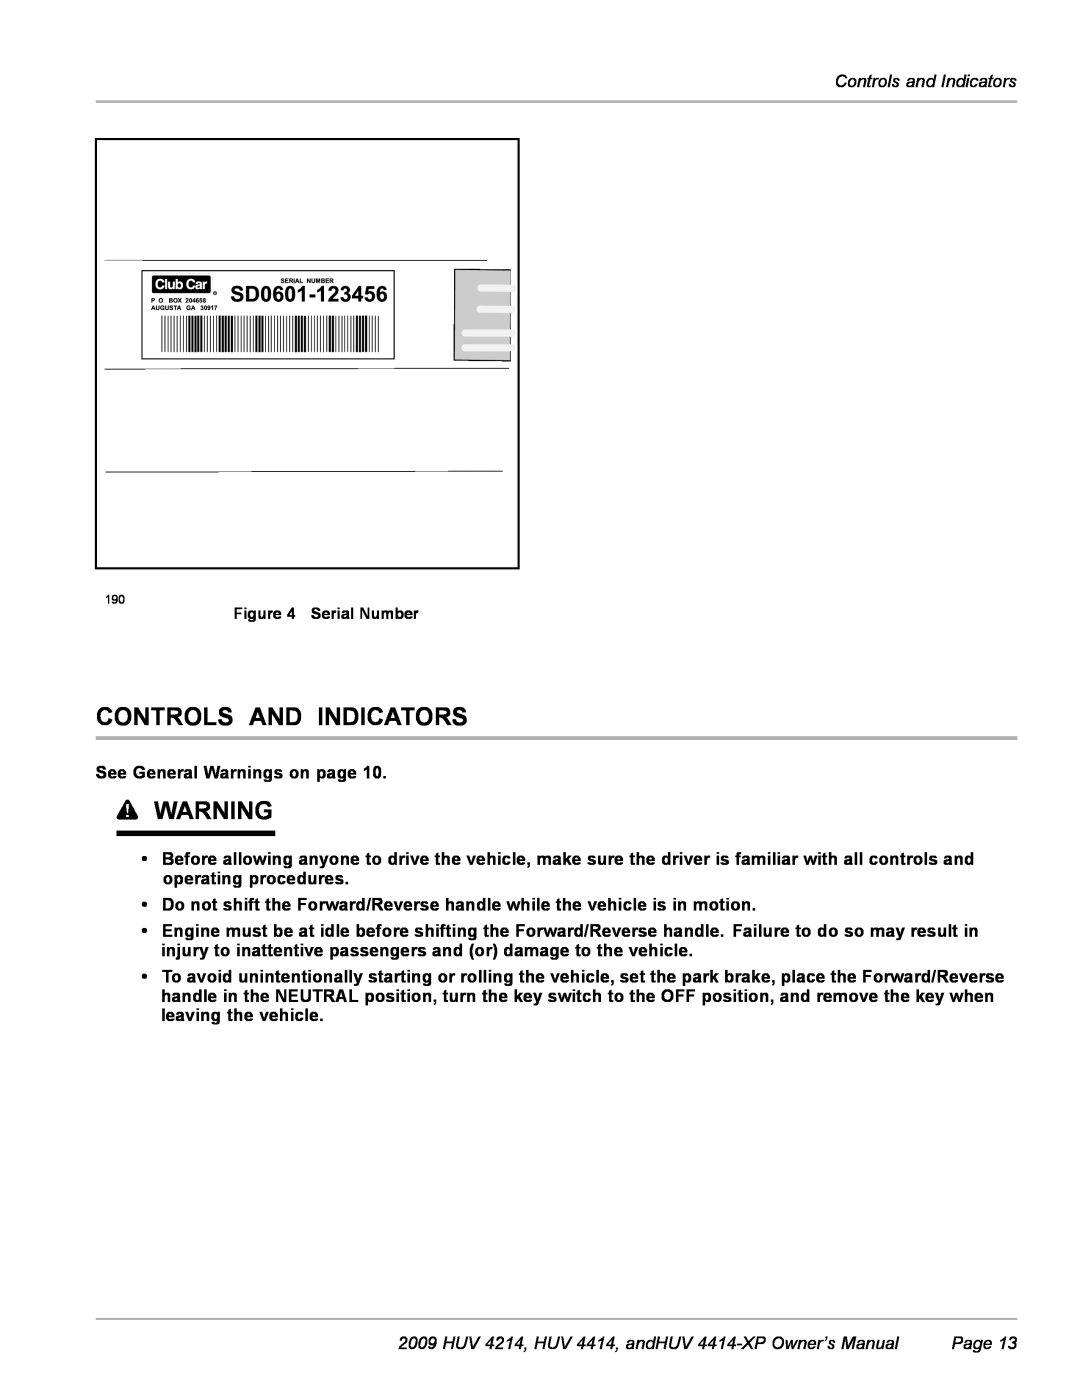 Husqvarna Controls And Indicators, Controls and Indicators, HUV 4214, HUV 4414, andHUV 4414-XP Owner’s Manual, Page 